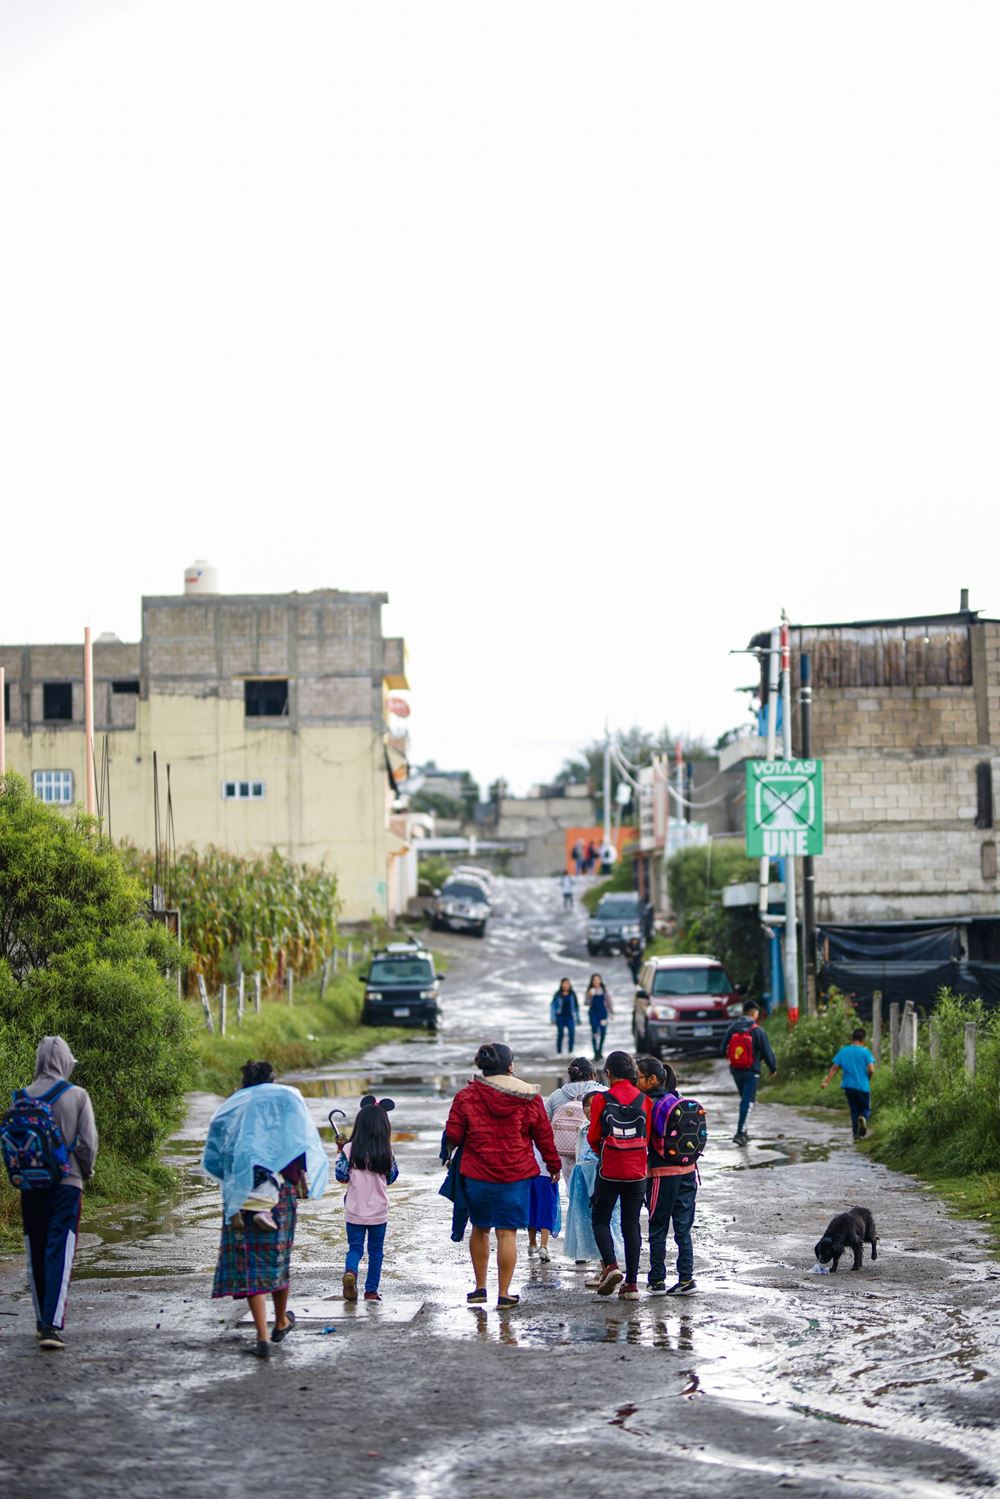 Fußgänger, darunter Schulkinder, gehen eine nasse Straße entlang (Quelle: Martin Bondzio)